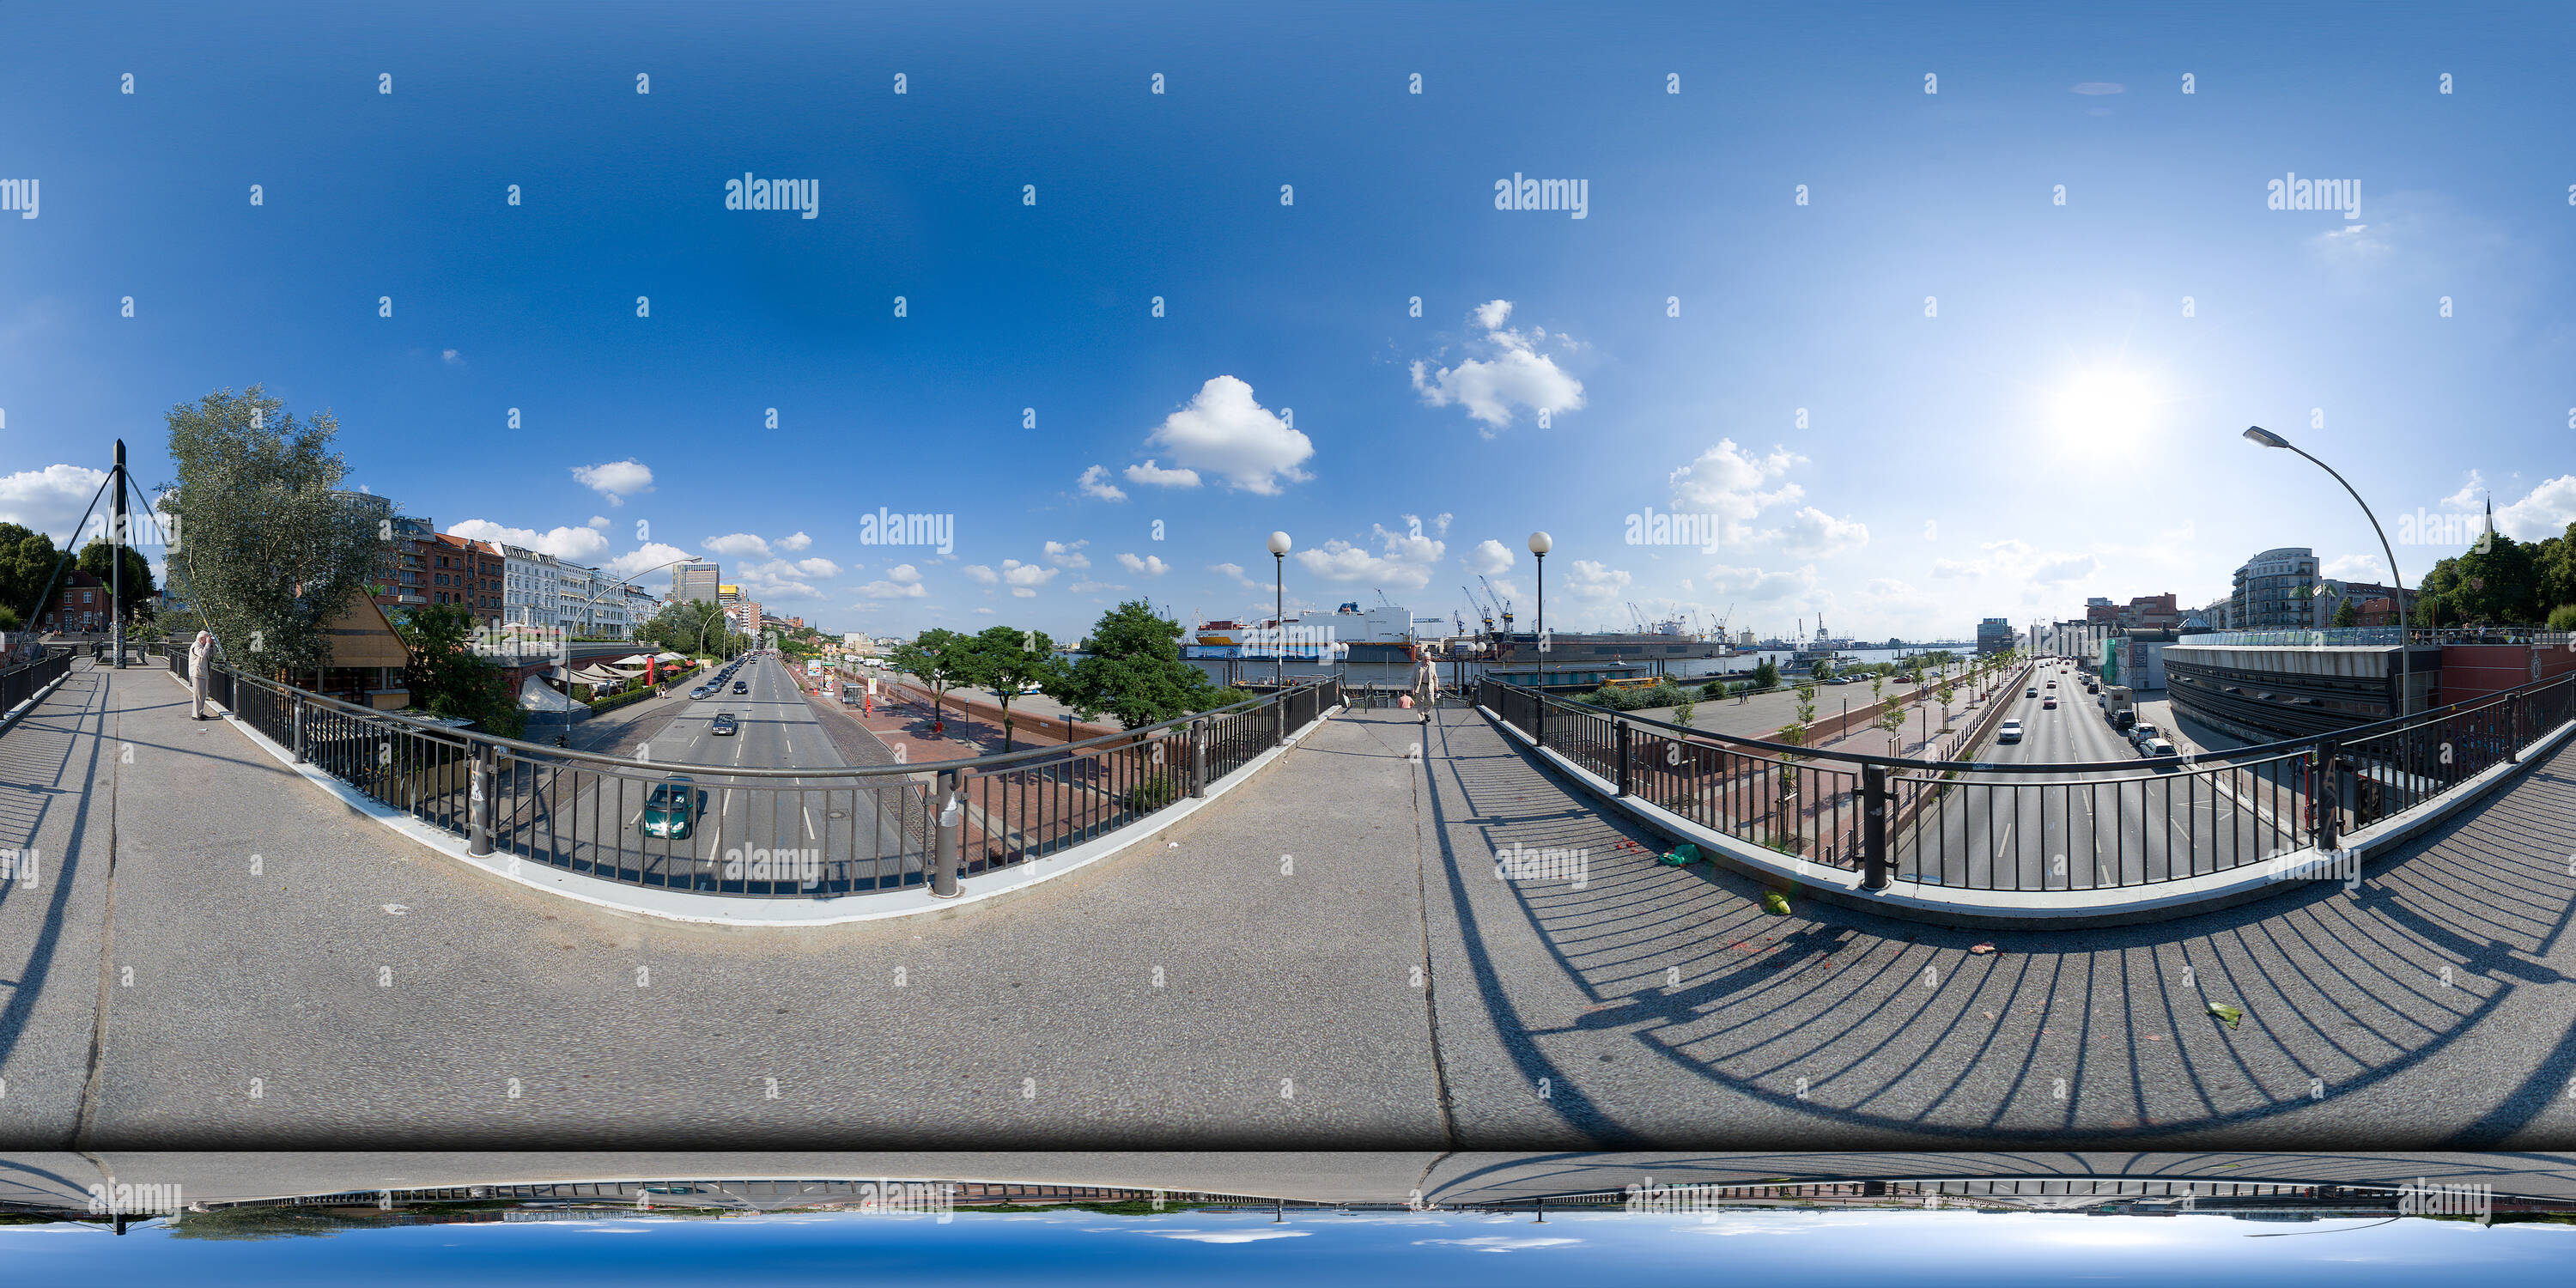 360 degree panoramic view of St. Pauli Hafenstraße